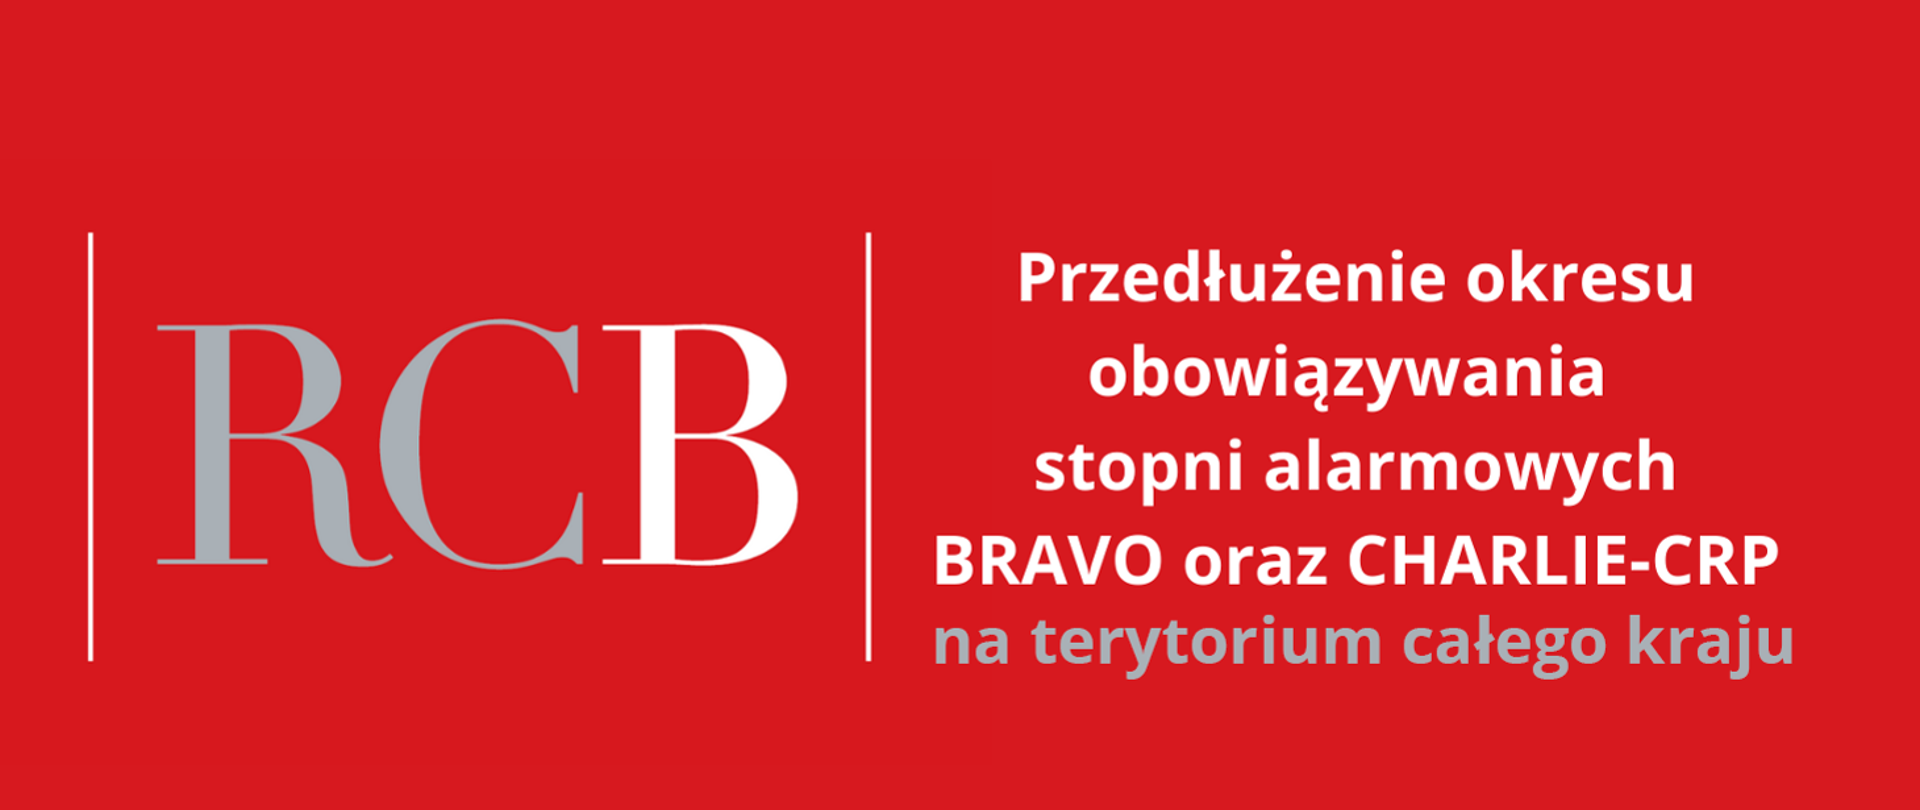 Czerwony baner białym napisem informującym o przedłużeniu okresu obowiązywania stopni alarmowych BRAVO oraz CHARLIE-CRP na terytorium całego kraju